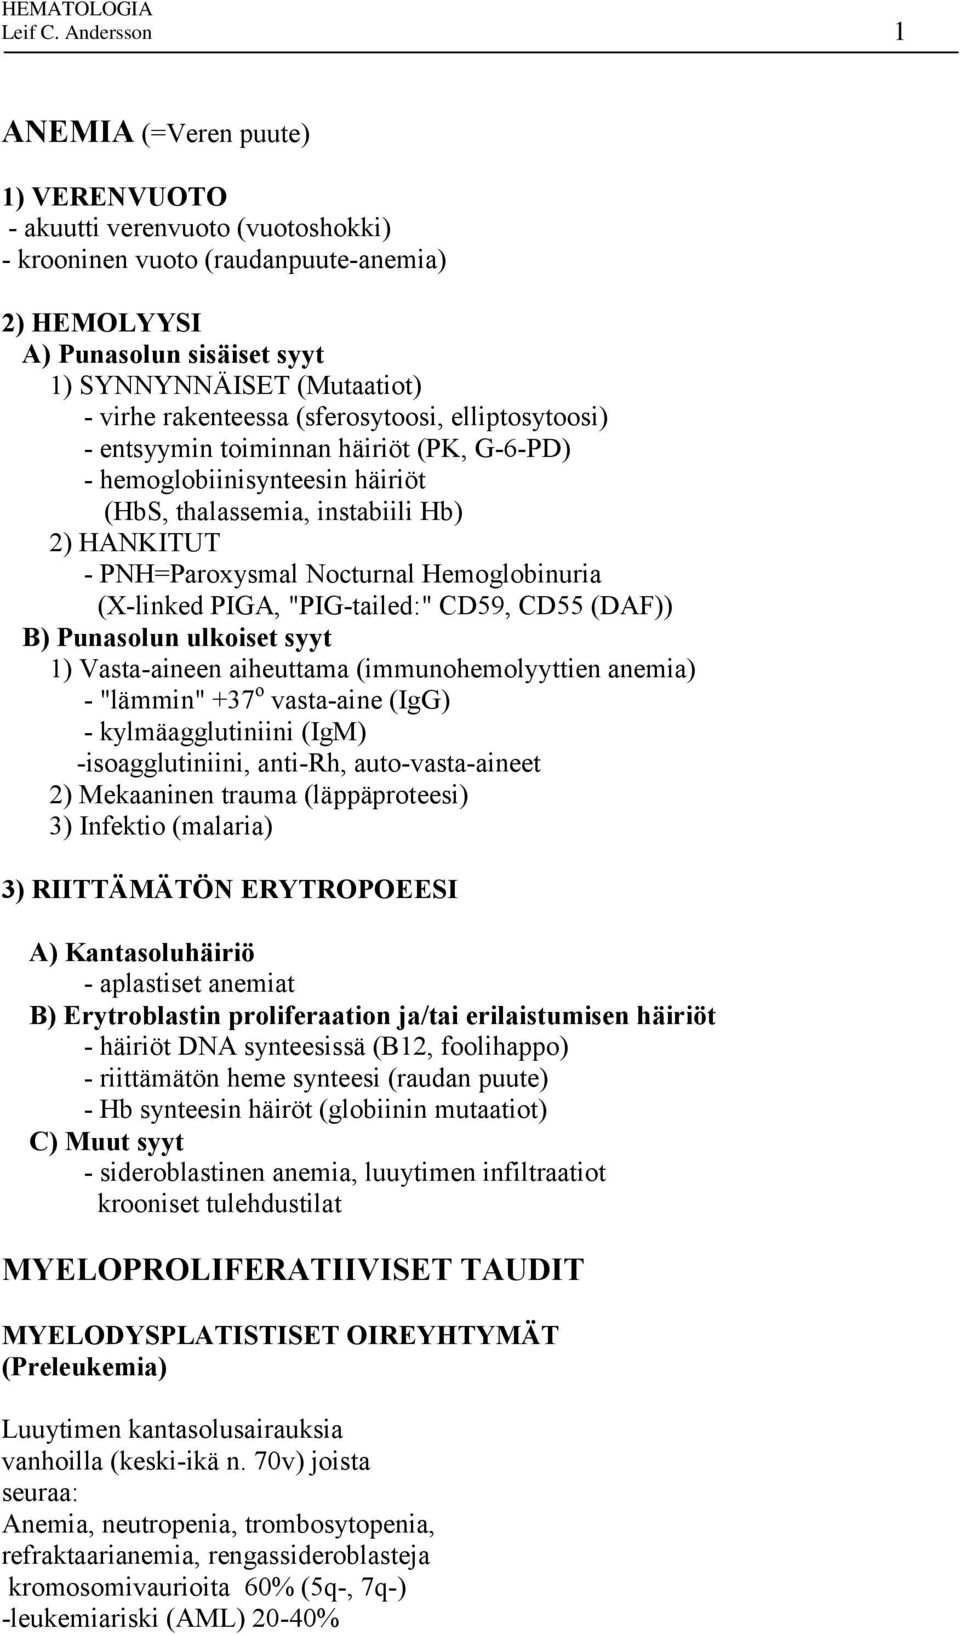 rakenteessa (sferosytoosi, elliptosytoosi) - entsyymin toiminnan häiriöt (PK, G-6-PD) - hemoglobiinisynteesin häiriöt (HbS, thalassemia, instabiili Hb) 2) HANKITUT - PNH=Paroxysmal Nocturnal